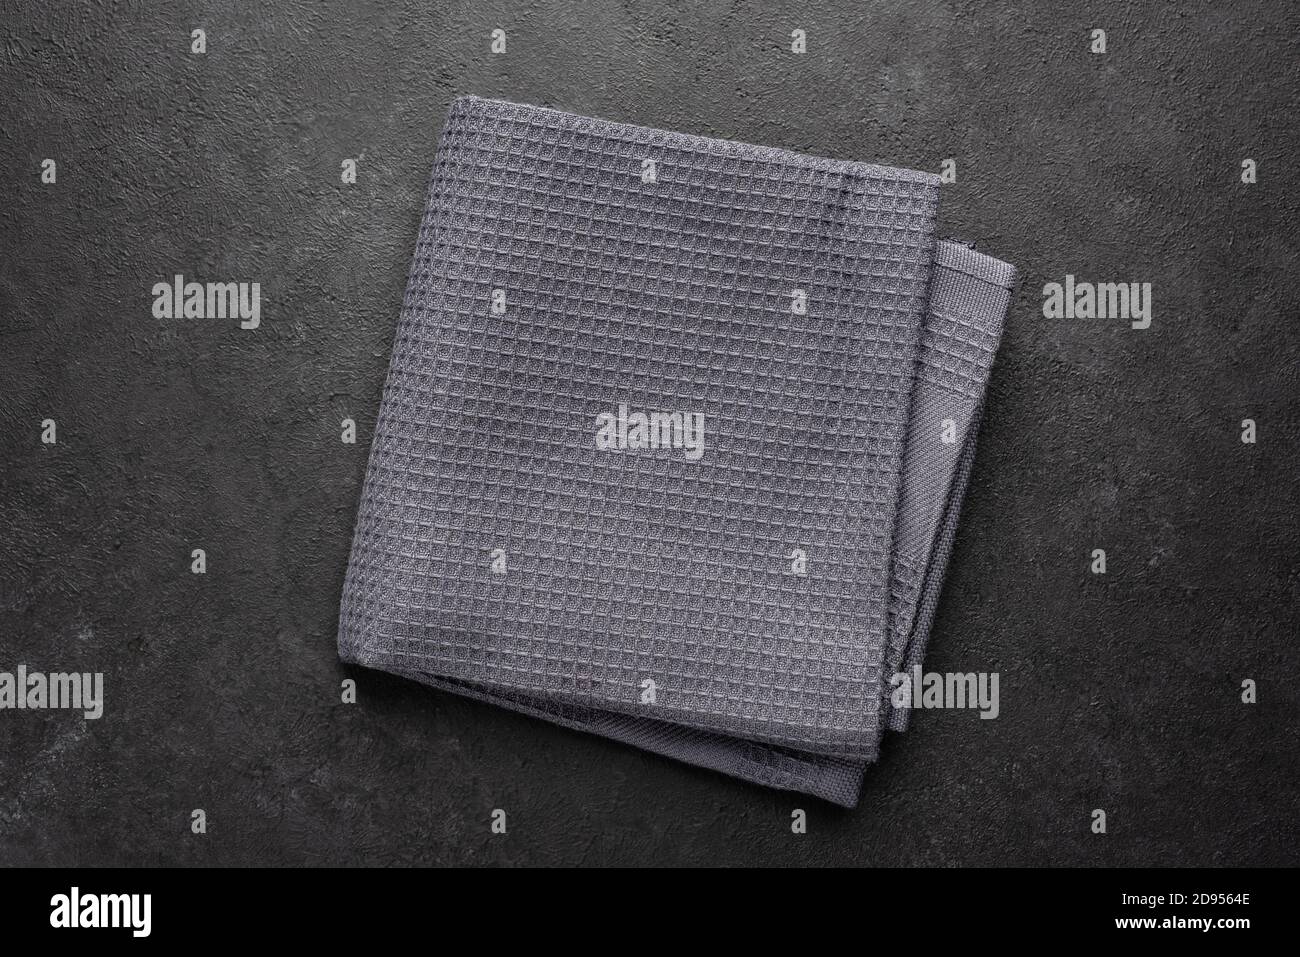 Tissu de cuisine gaufré gris sur fond noir. Vue de dessus. Texture de la serviette de cuisine Banque D'Images